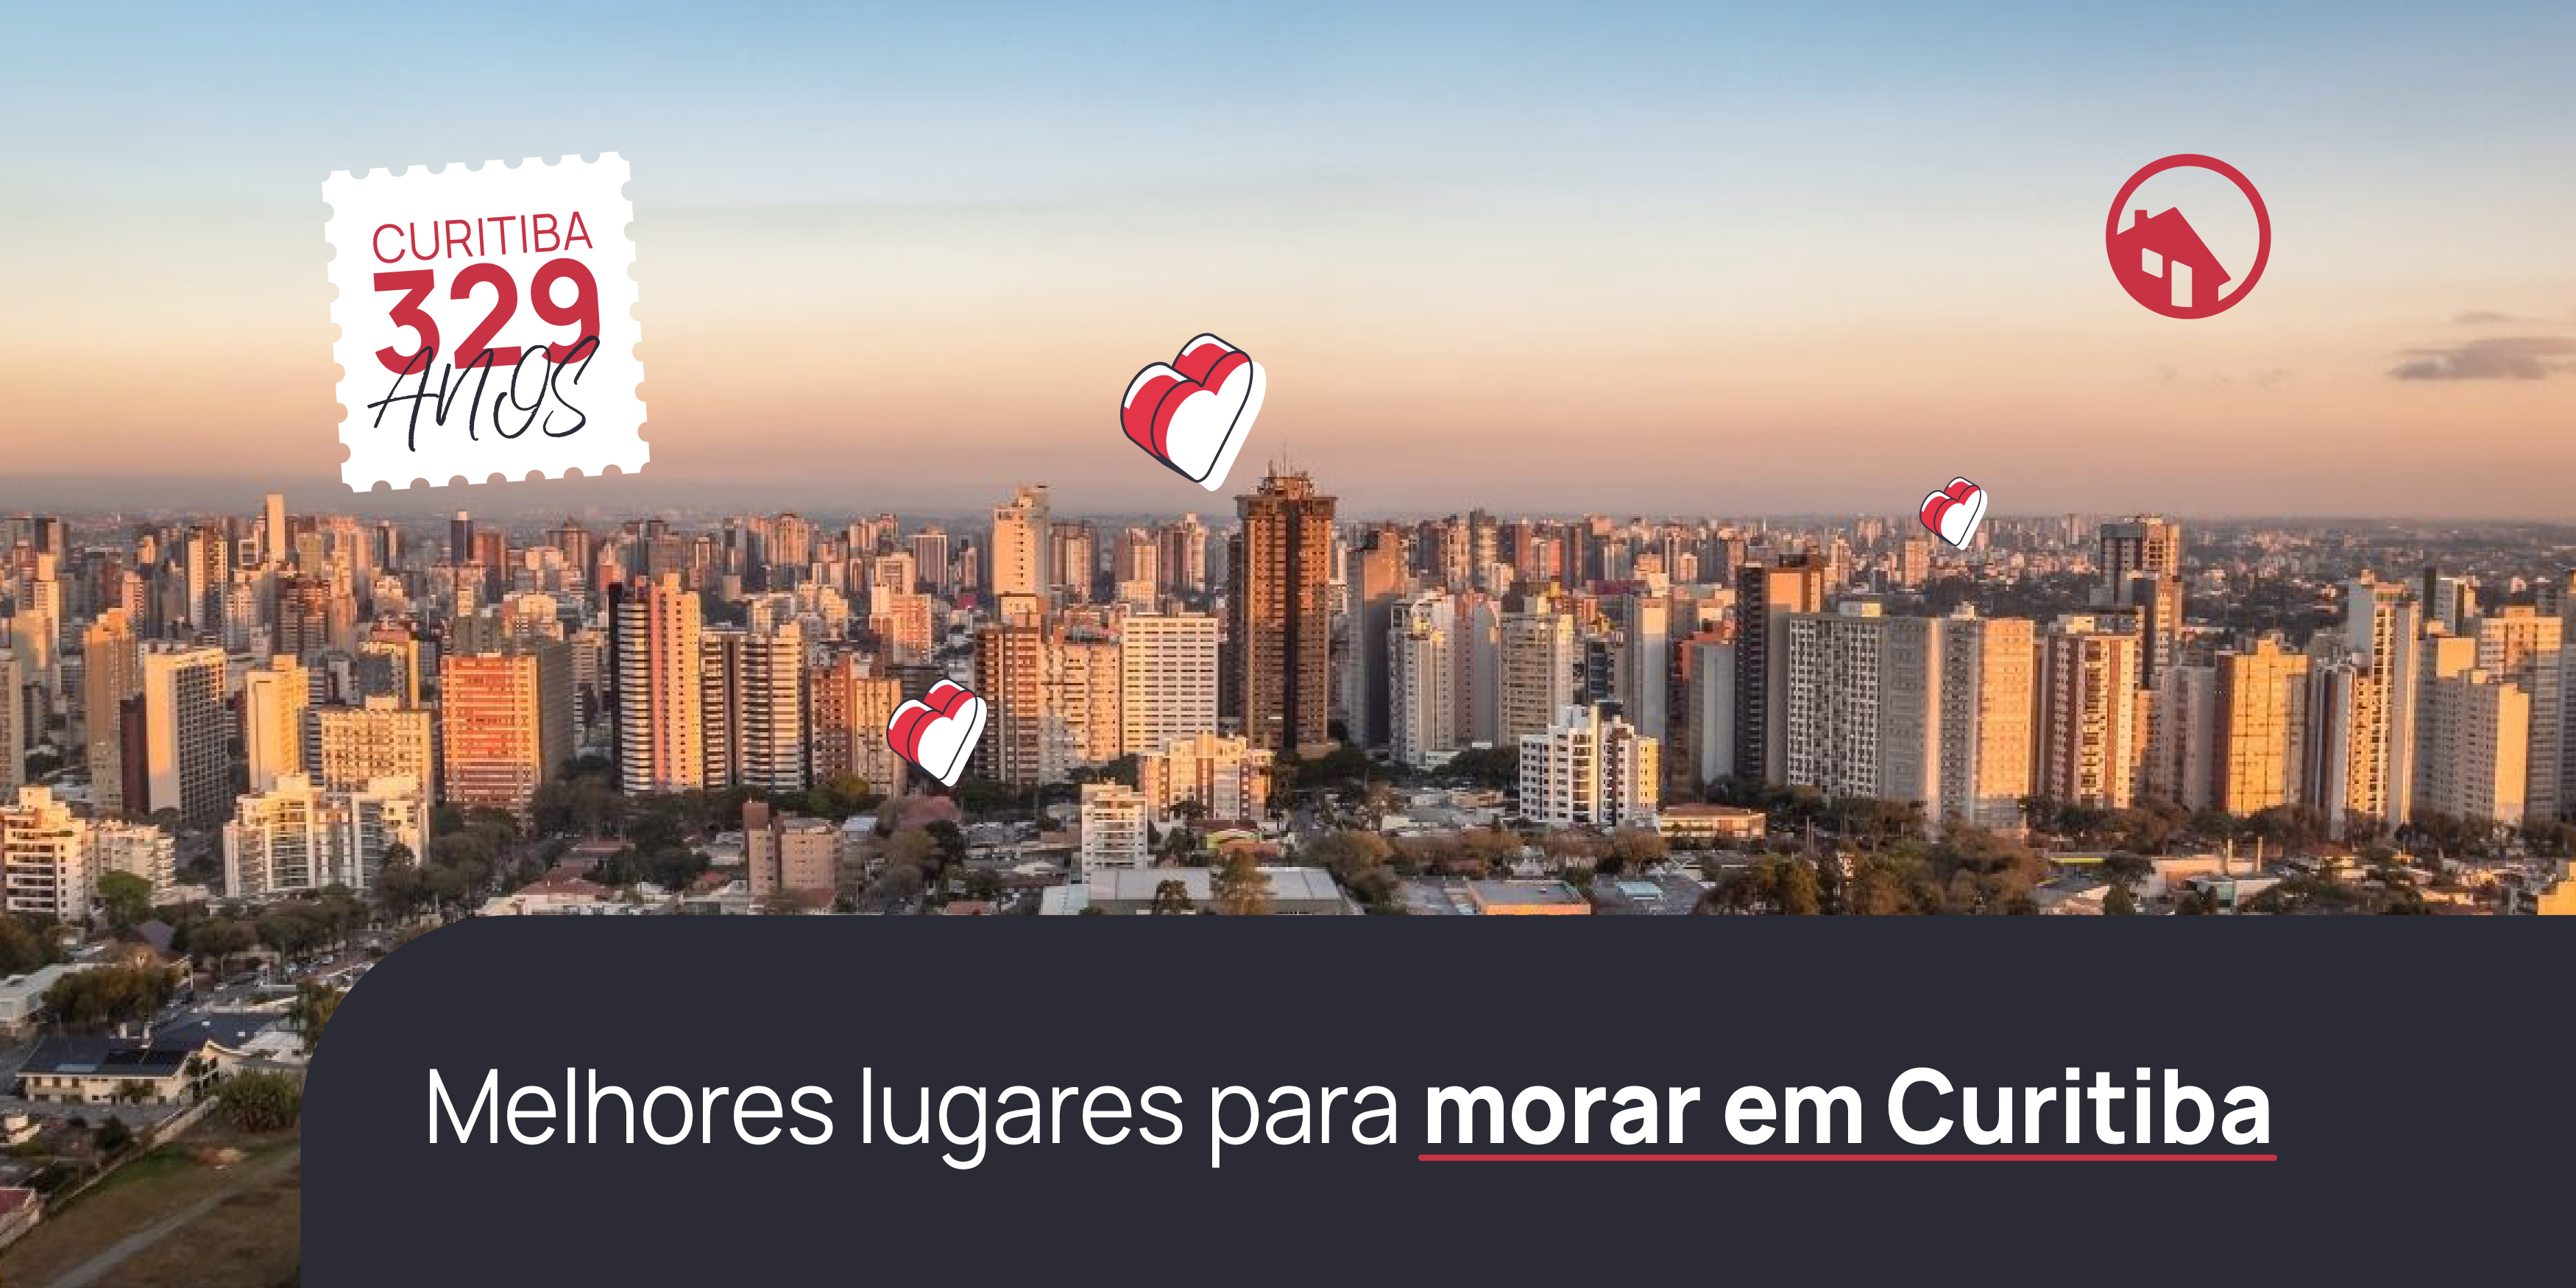 Curitiba e seus bairros encantadores. Já escolheu um para chamar de seu?